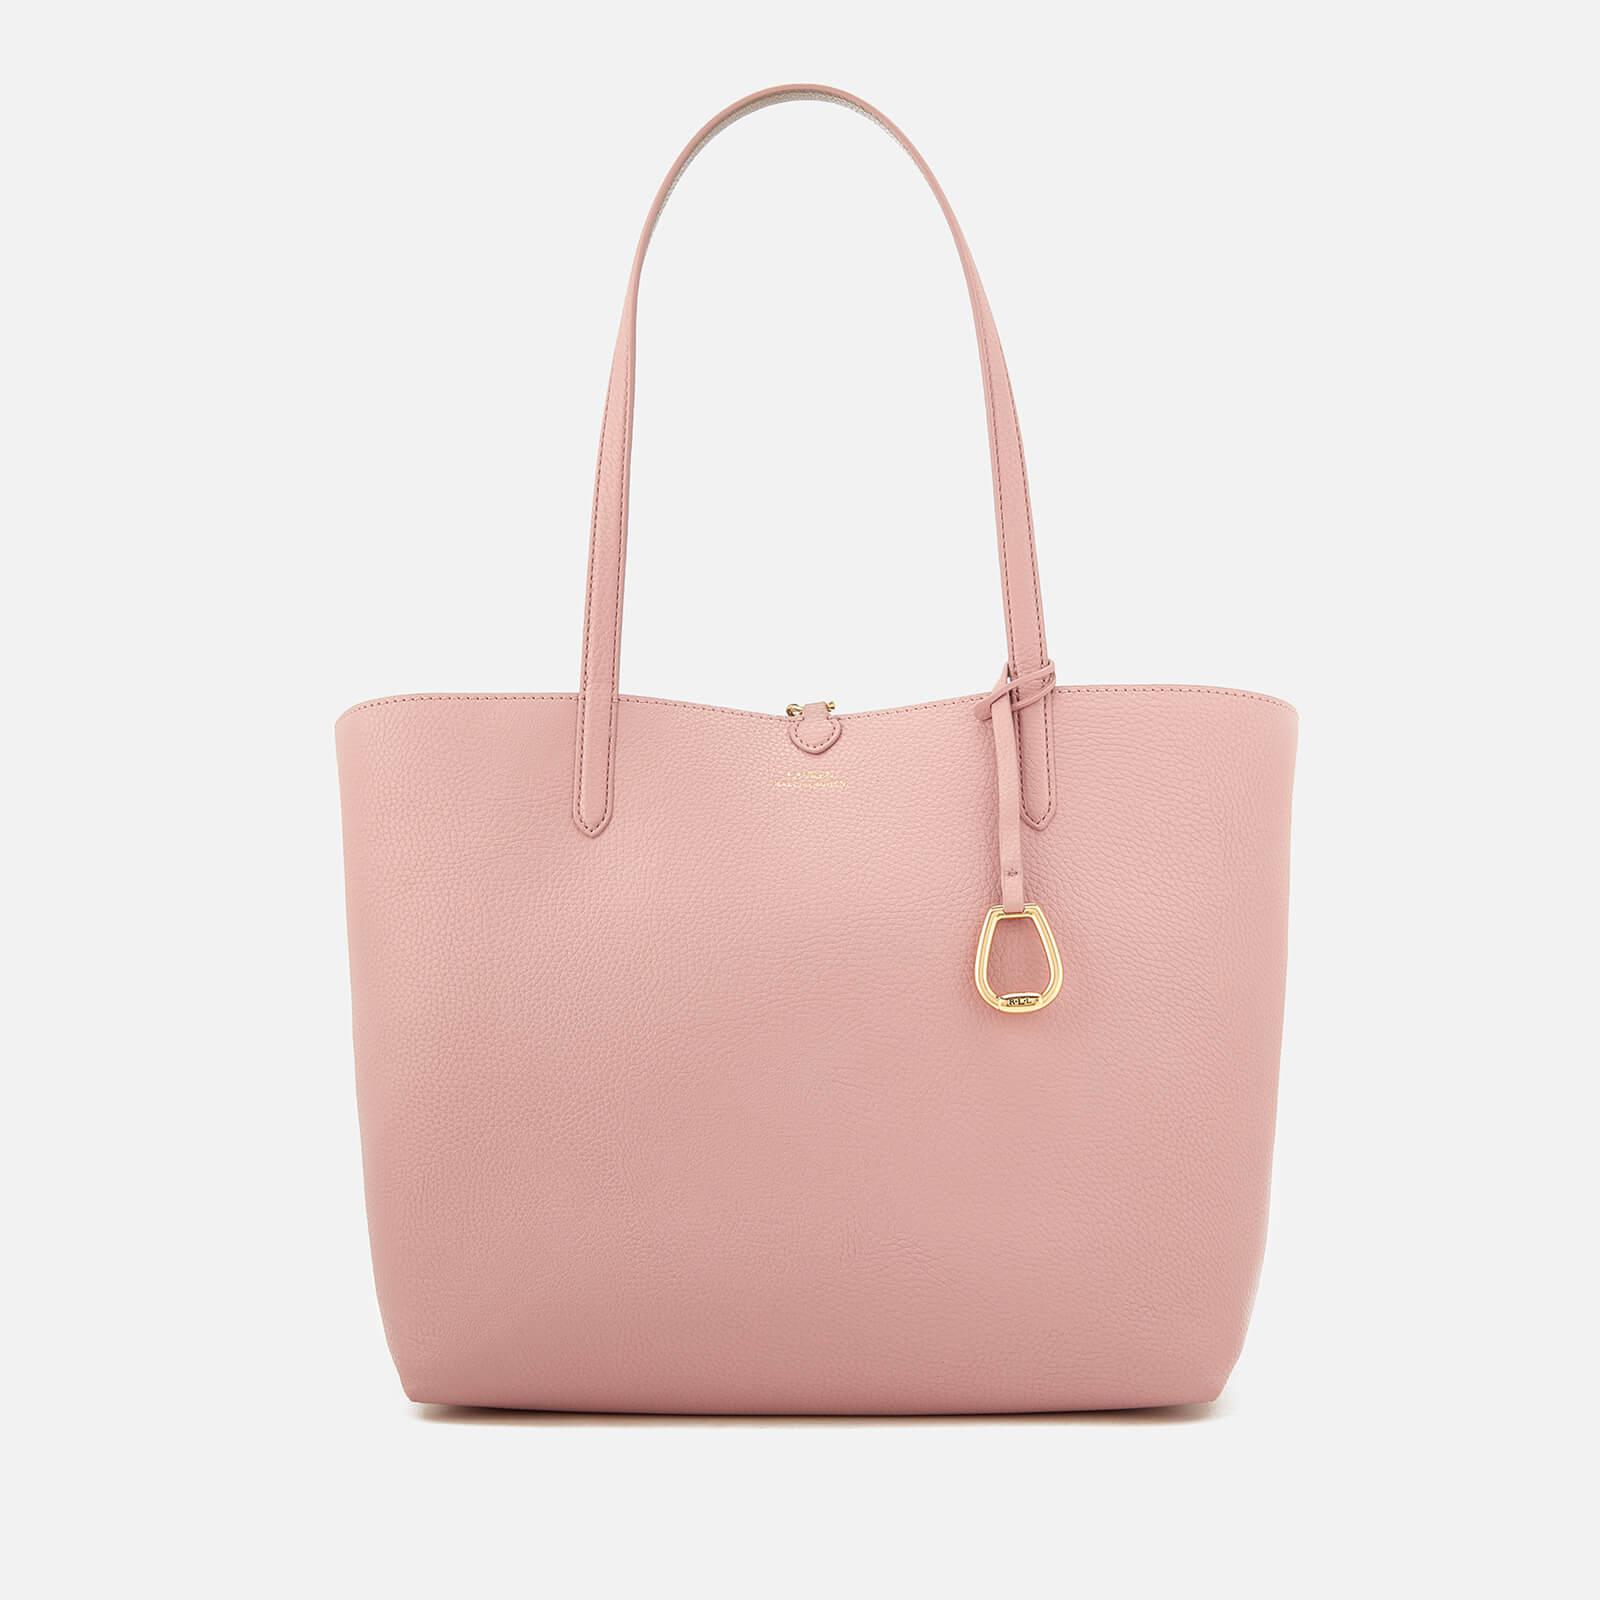 Lauren by Ralph Lauren Merrimack Reversible Tote Bag in Pink | Lyst Canada